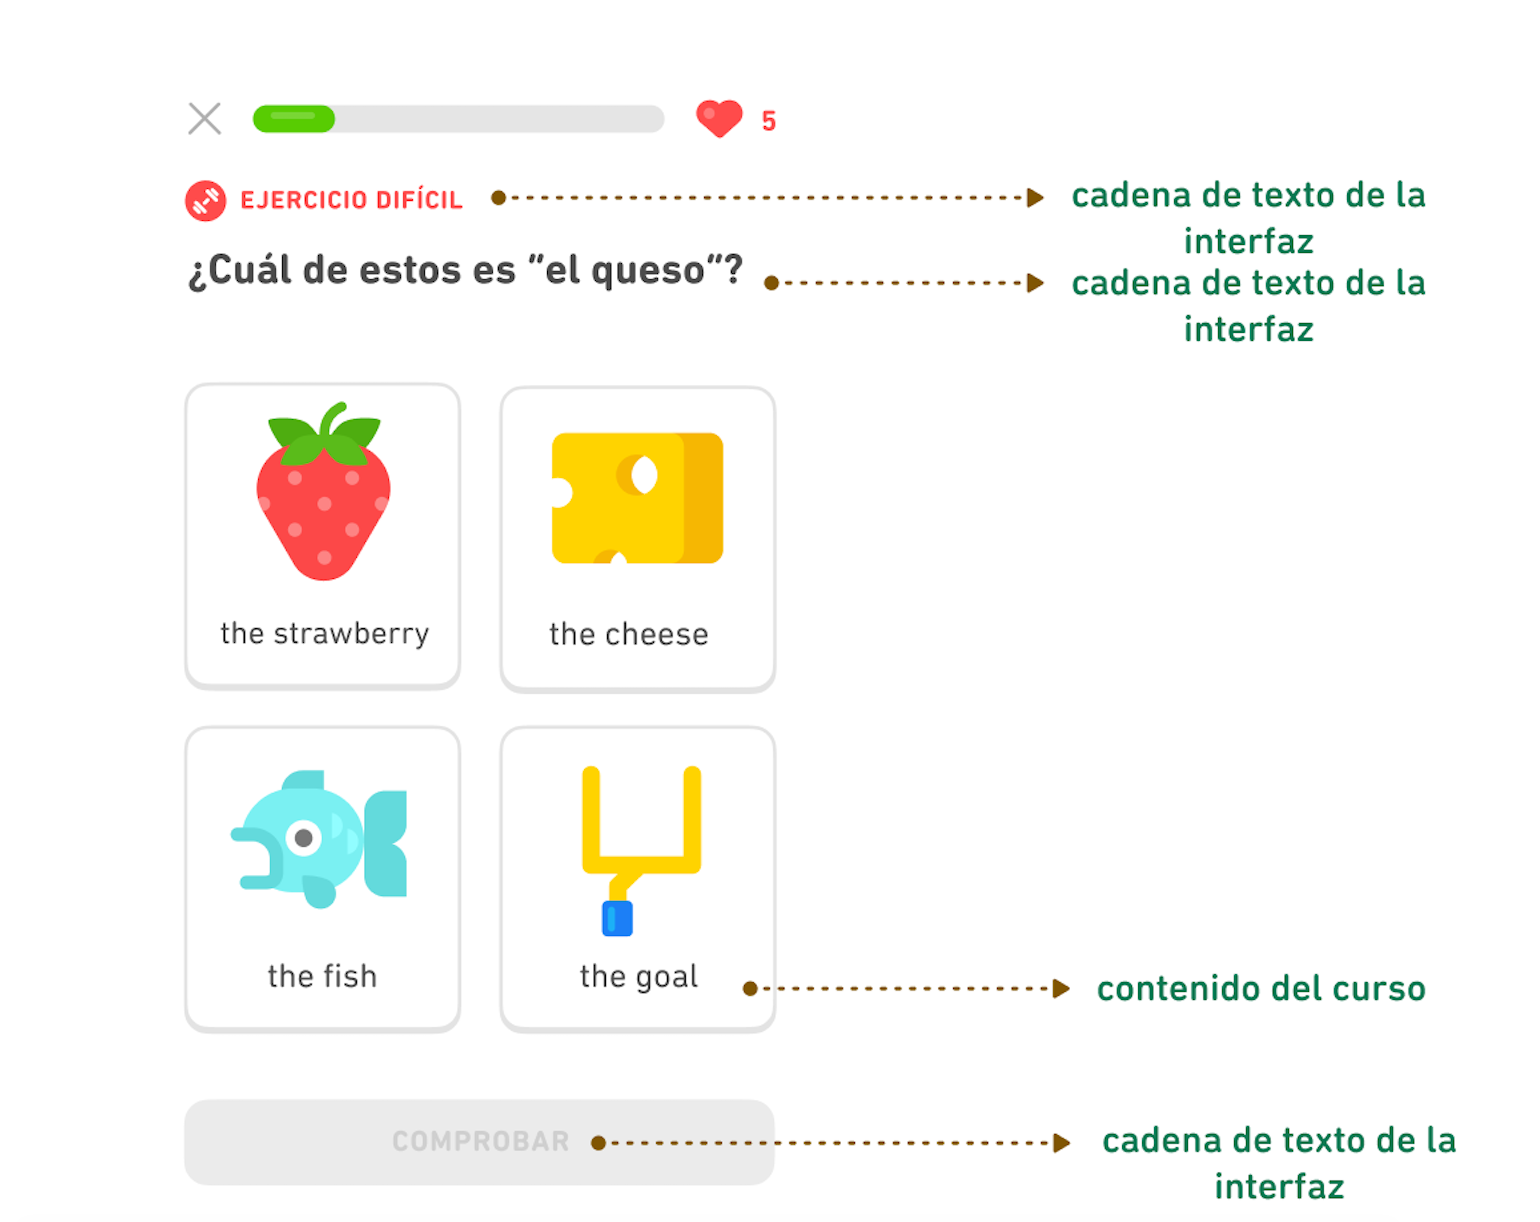 Captura de pantalla de un ejercicio de Duolingo del curso de inglés para hablantes de español mostranto la diferencia entre las cadenas de texto de la interfaz y el contenido del curso